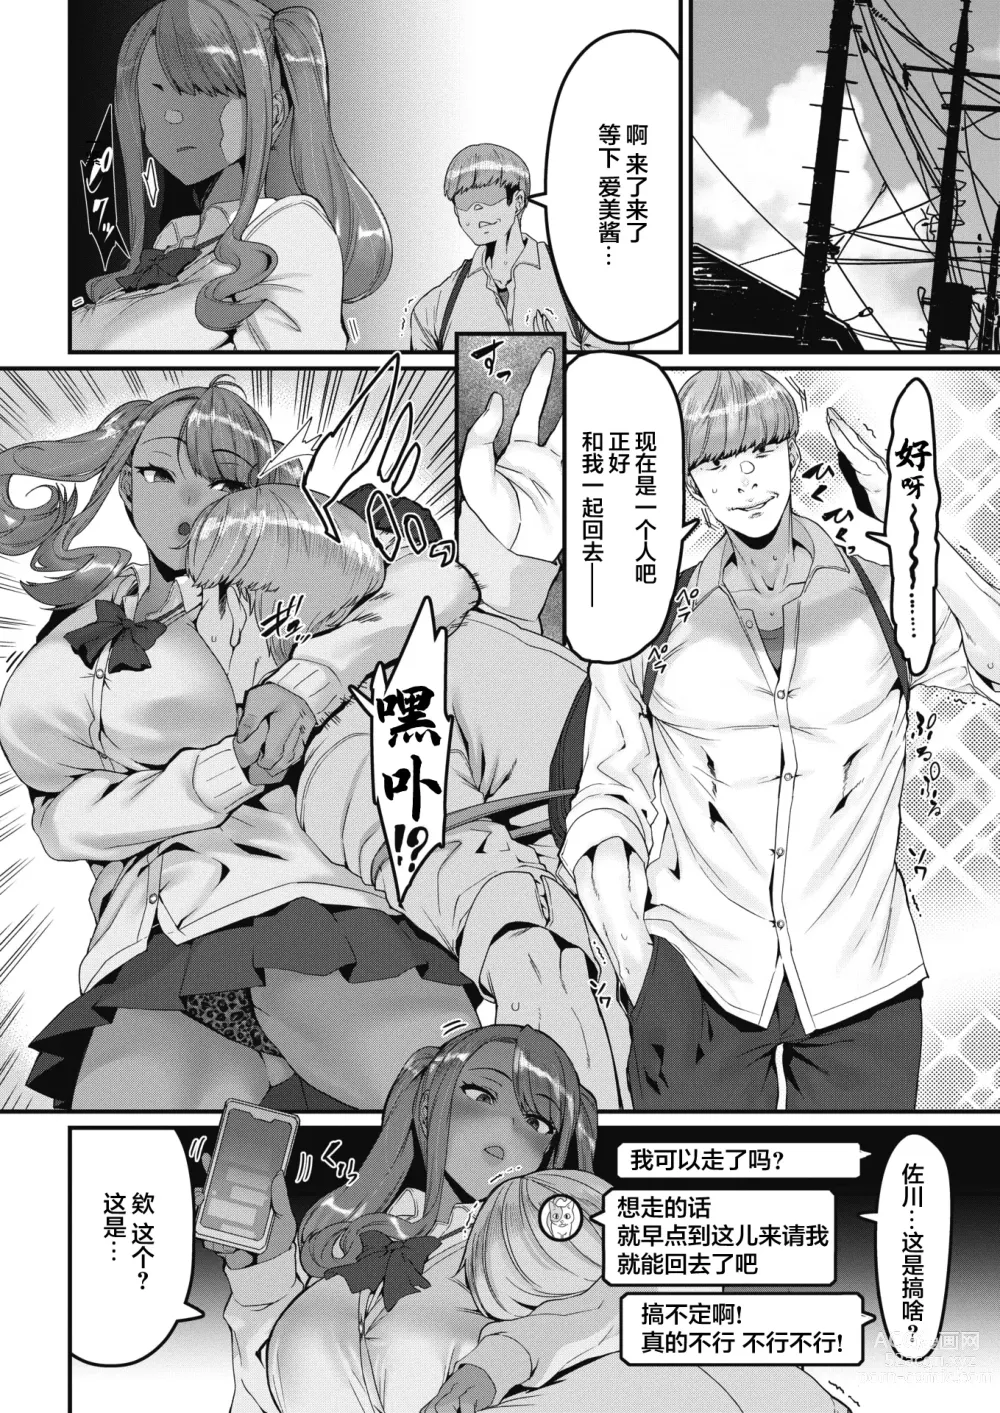 Page 2 of manga Moteasobareteiru!? (decensored)